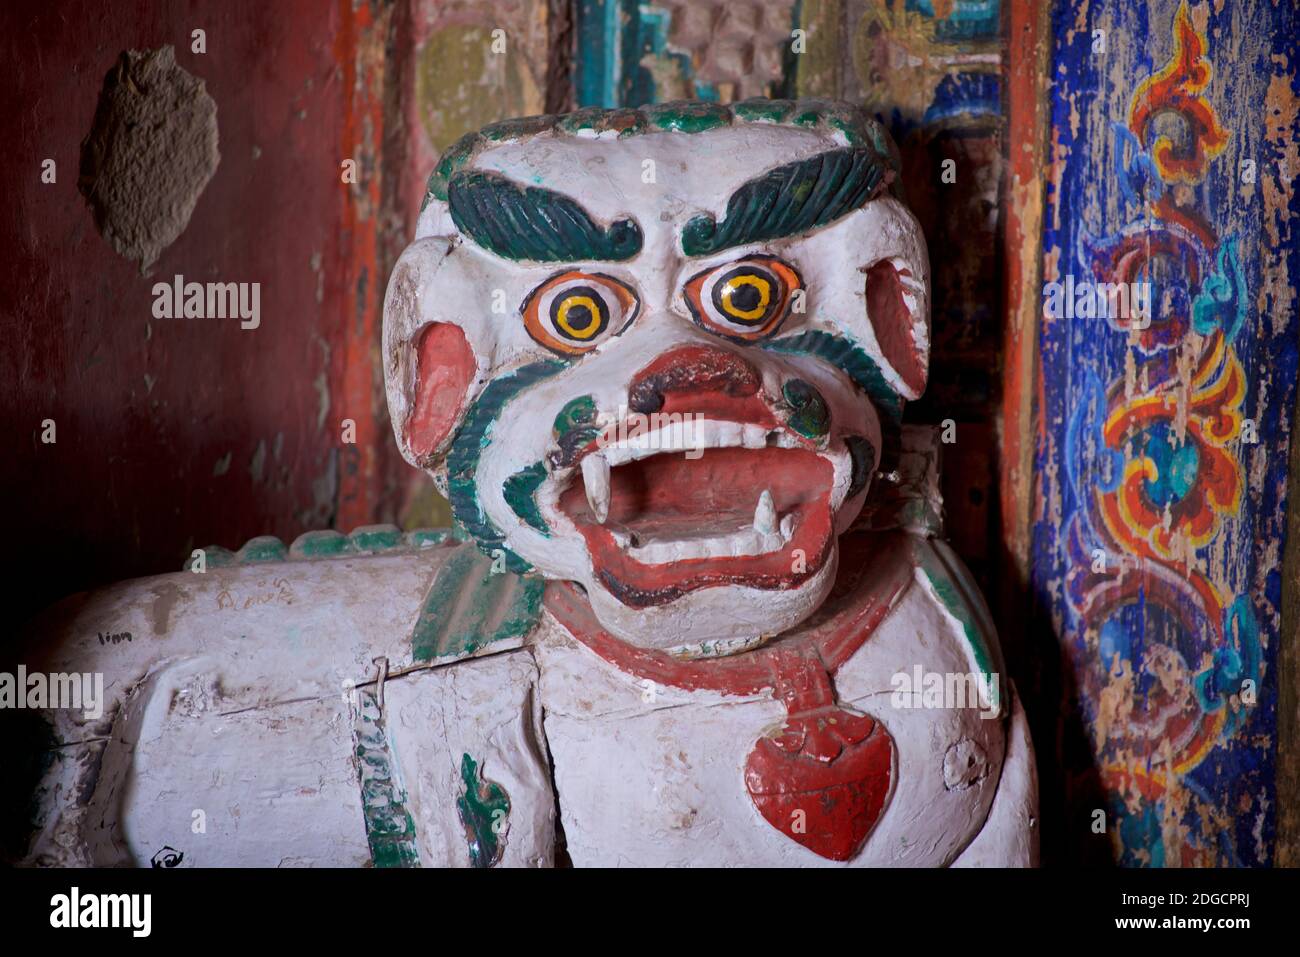 Iconographie bouddhiste tibétaine - une figurine sentinelle sculptée et peinte. Monastère de Hemis, Hemis, Ladakh, Jammu-et-Cachemire, Inde Banque D'Images